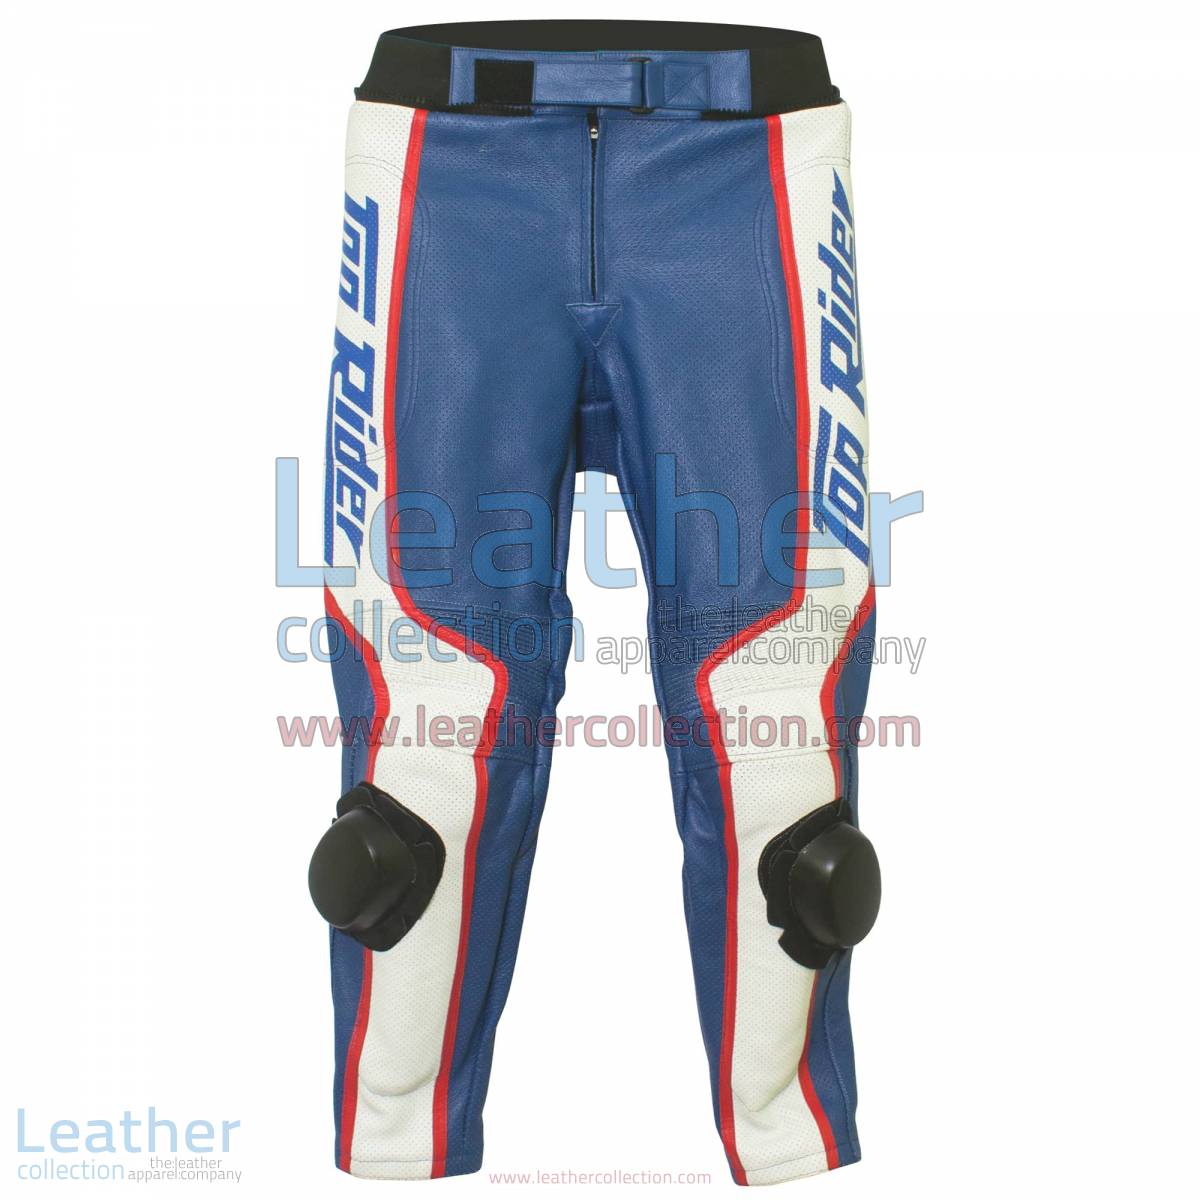 Freddie Spencer Honda Daytona 1985 Motorcycle Racing Pant | Motorcycle pants,racing pants